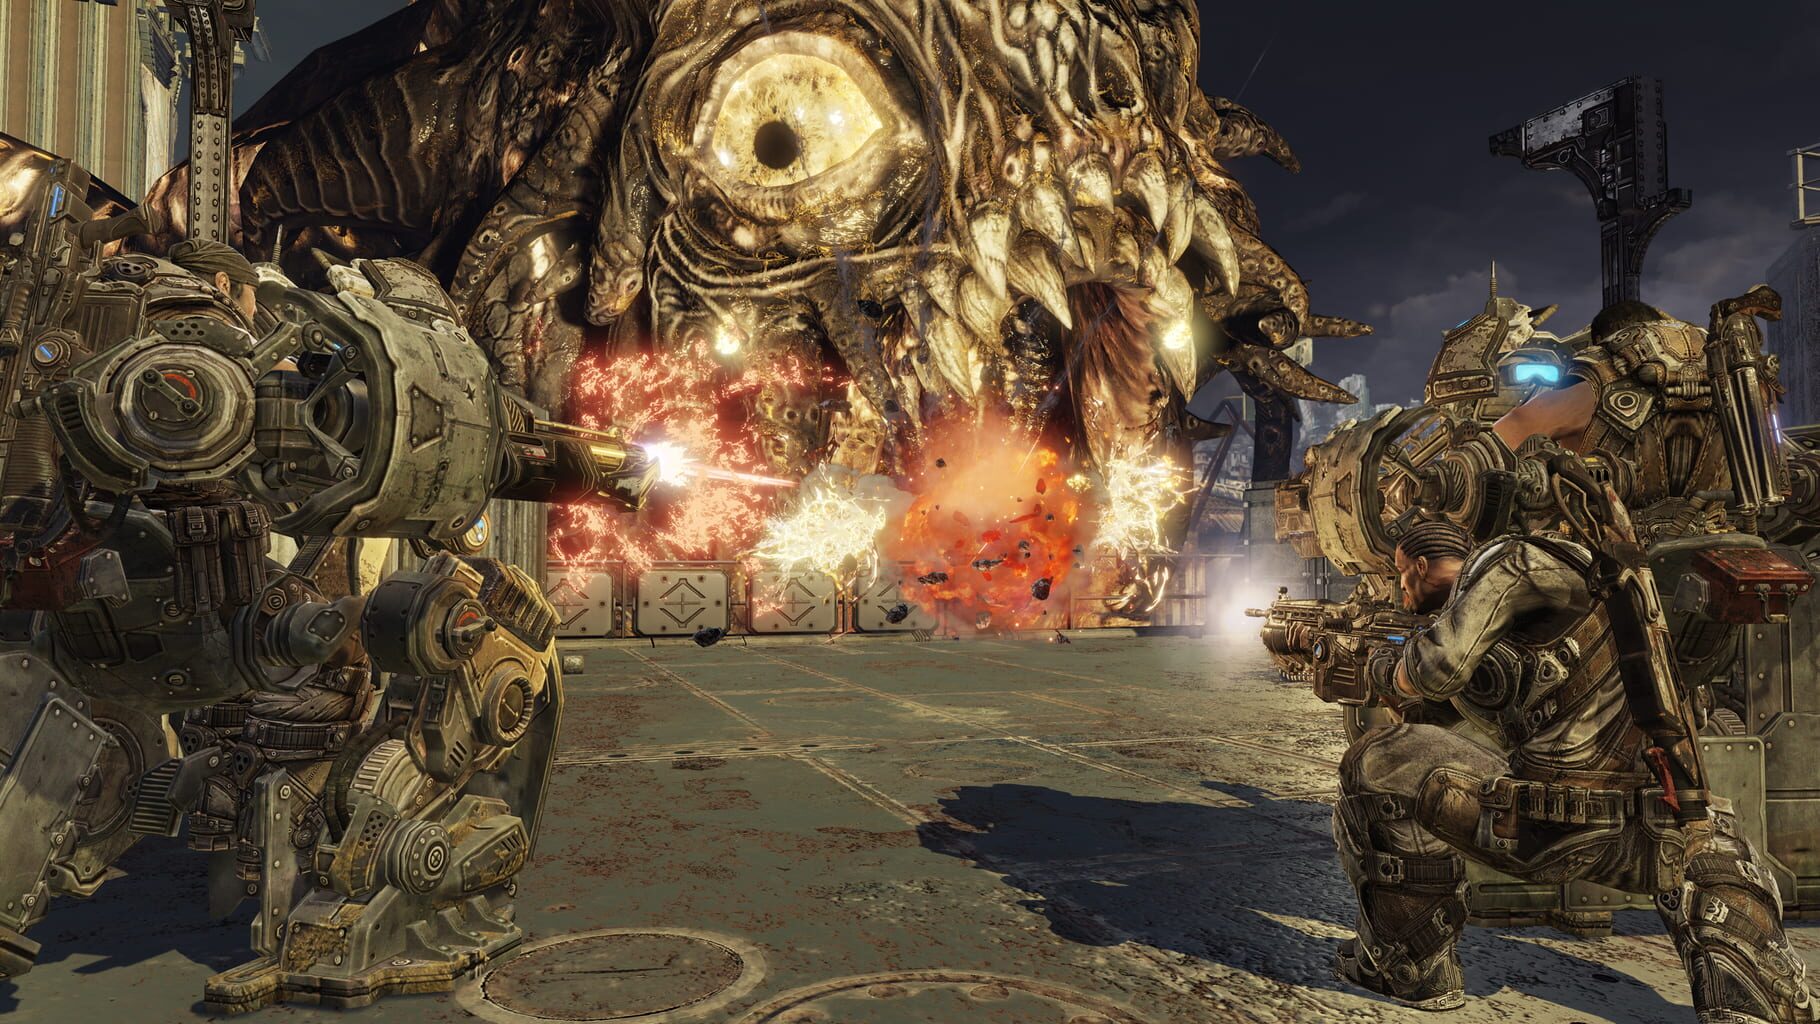 Gears of War 3 screenshots